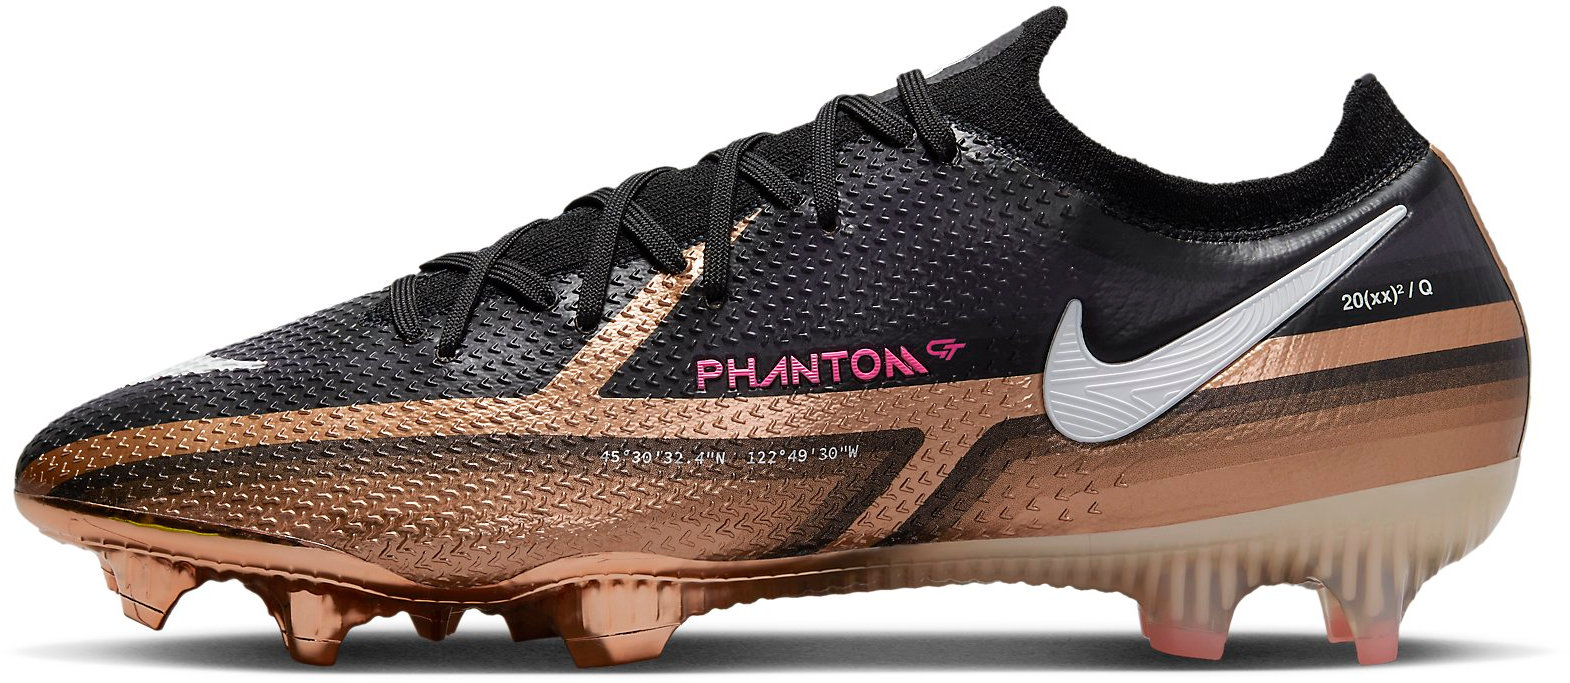 Ποδοσφαιρικά παπούτσια Nike PHANTOM GT2 ELITE FG